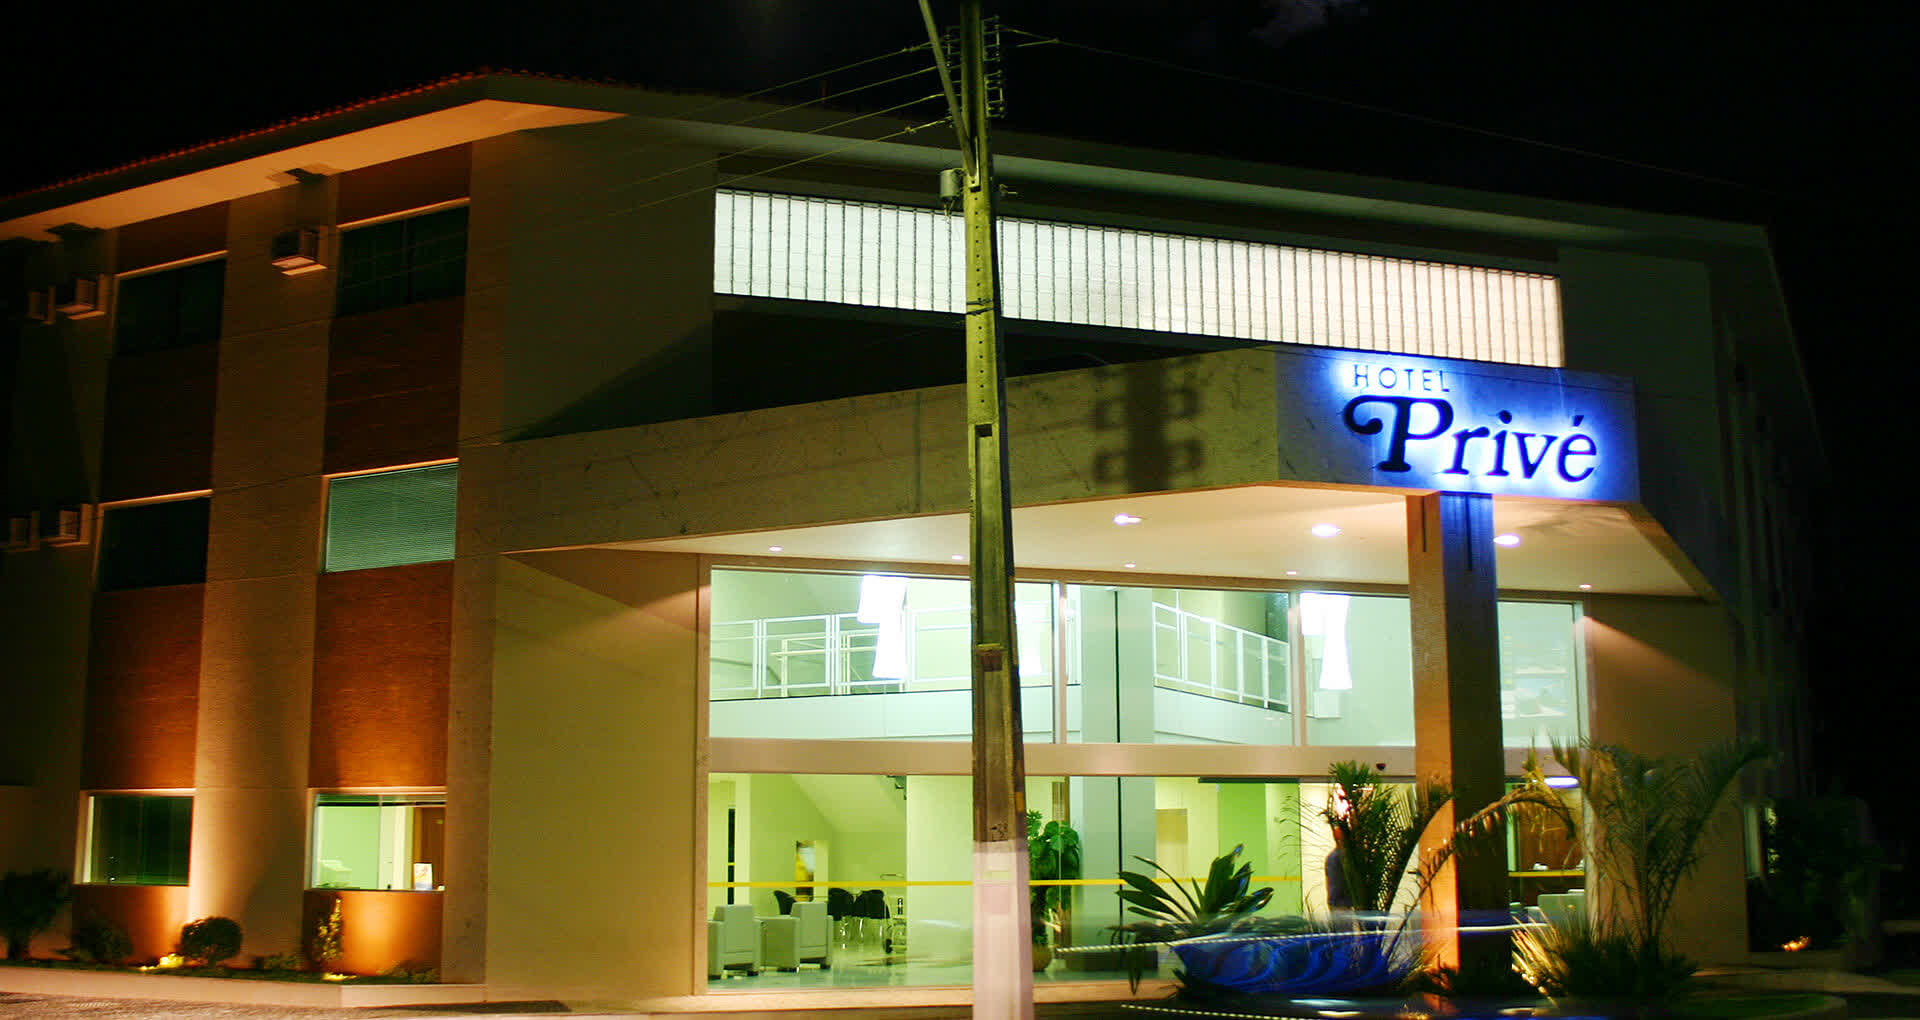 Hospedagem Prive Thermas Hotel em Caldas Novas Goiás